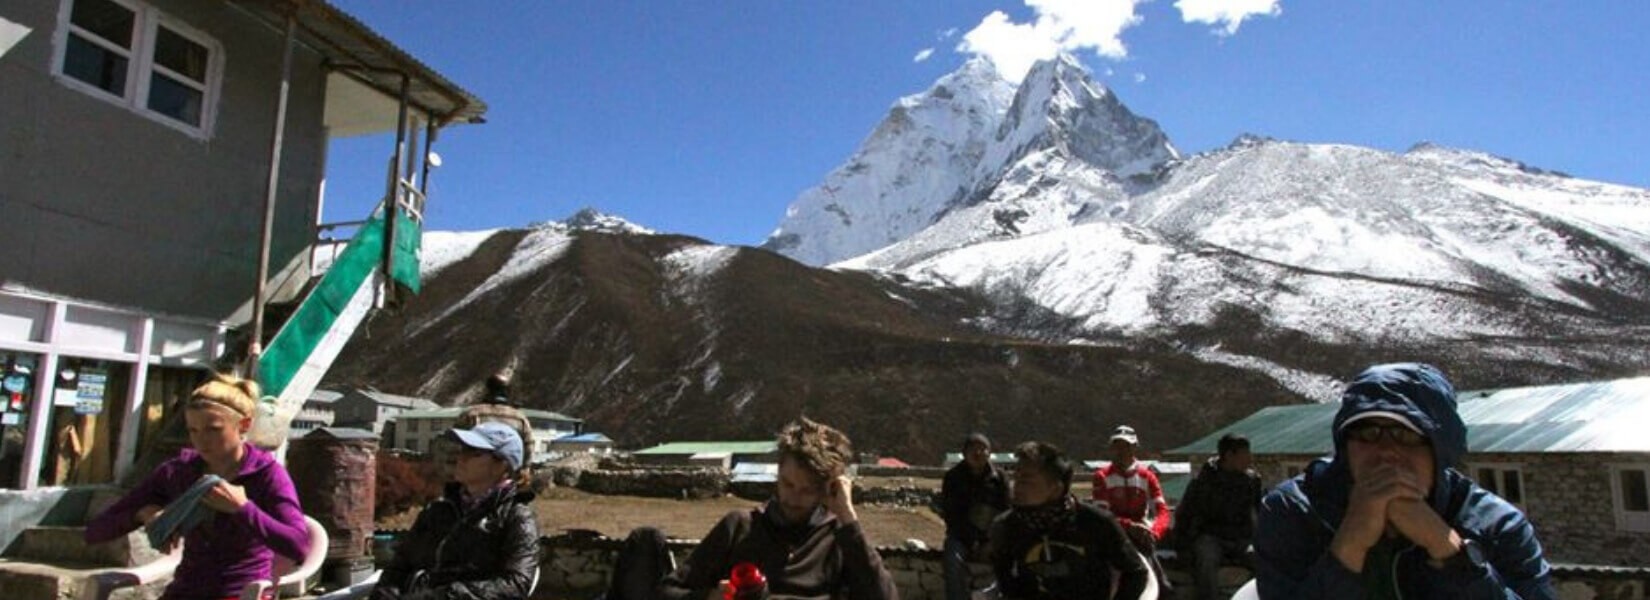 Base Camp Everest